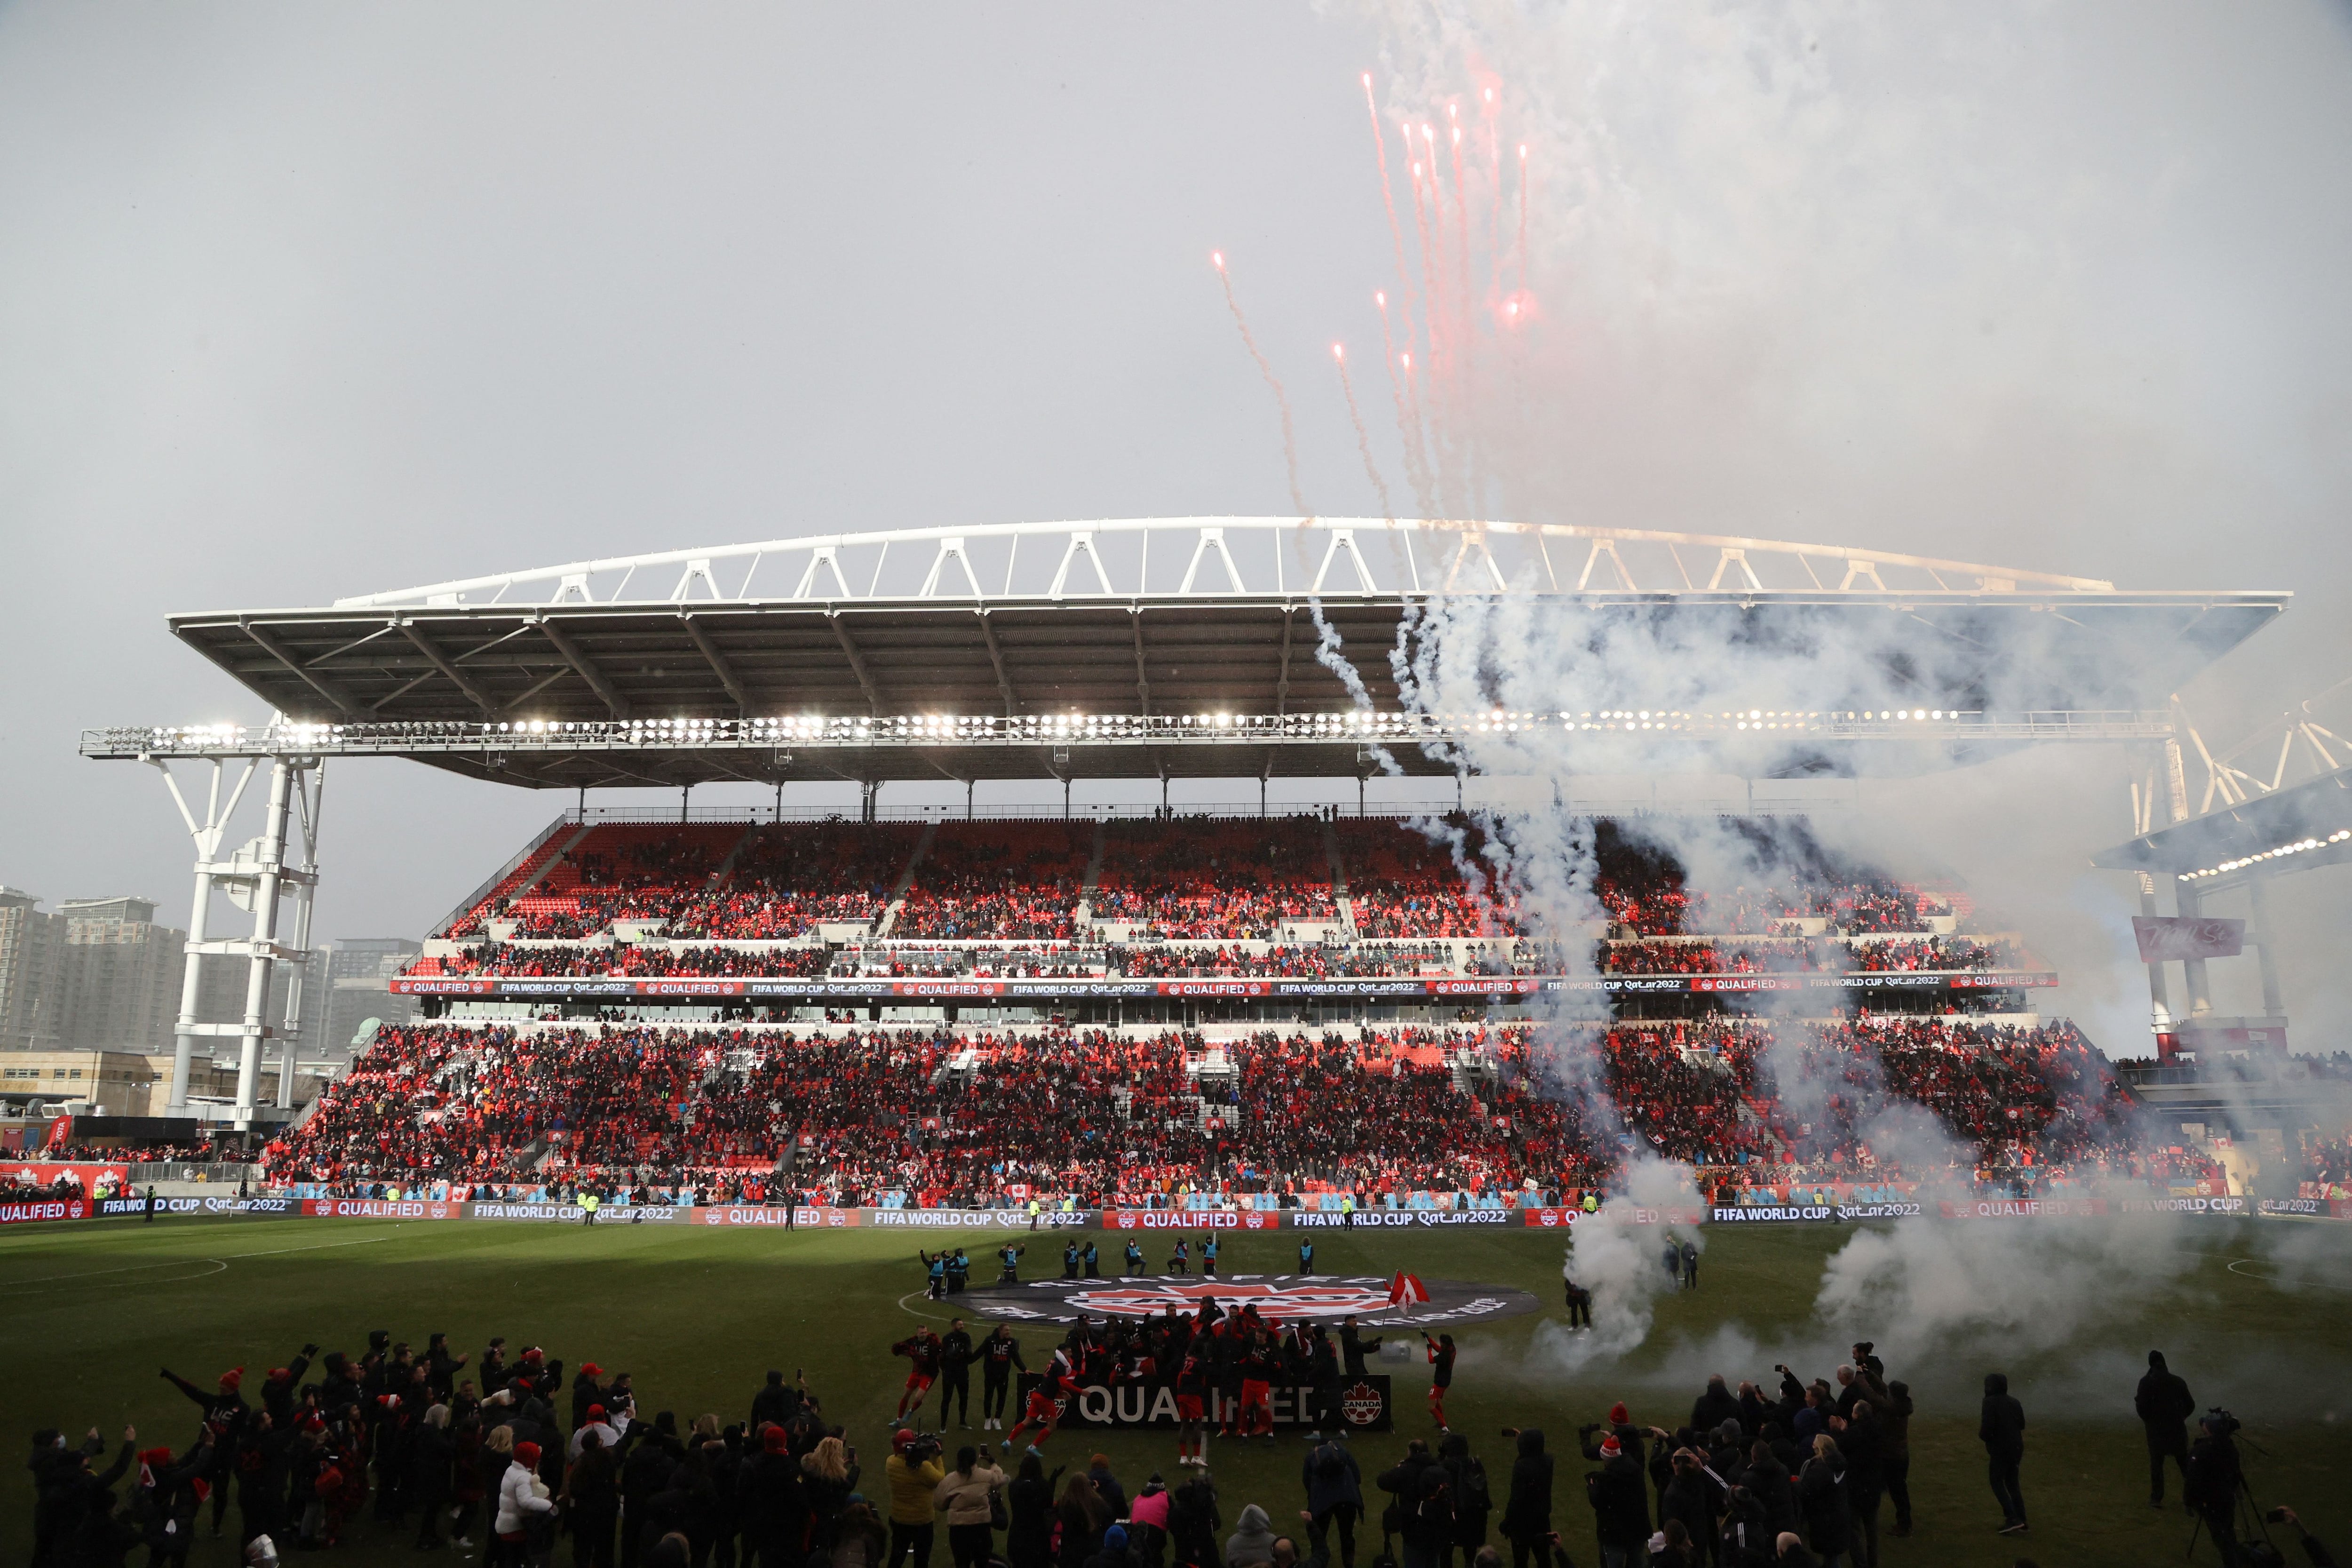 Jugadores y aficionados festejan la clasificación de Canadá al Mundial. Estadio BMO Field, Toronto, Canadá. 27 de marzo de 2022.
REUTERS/Carlos Osorio